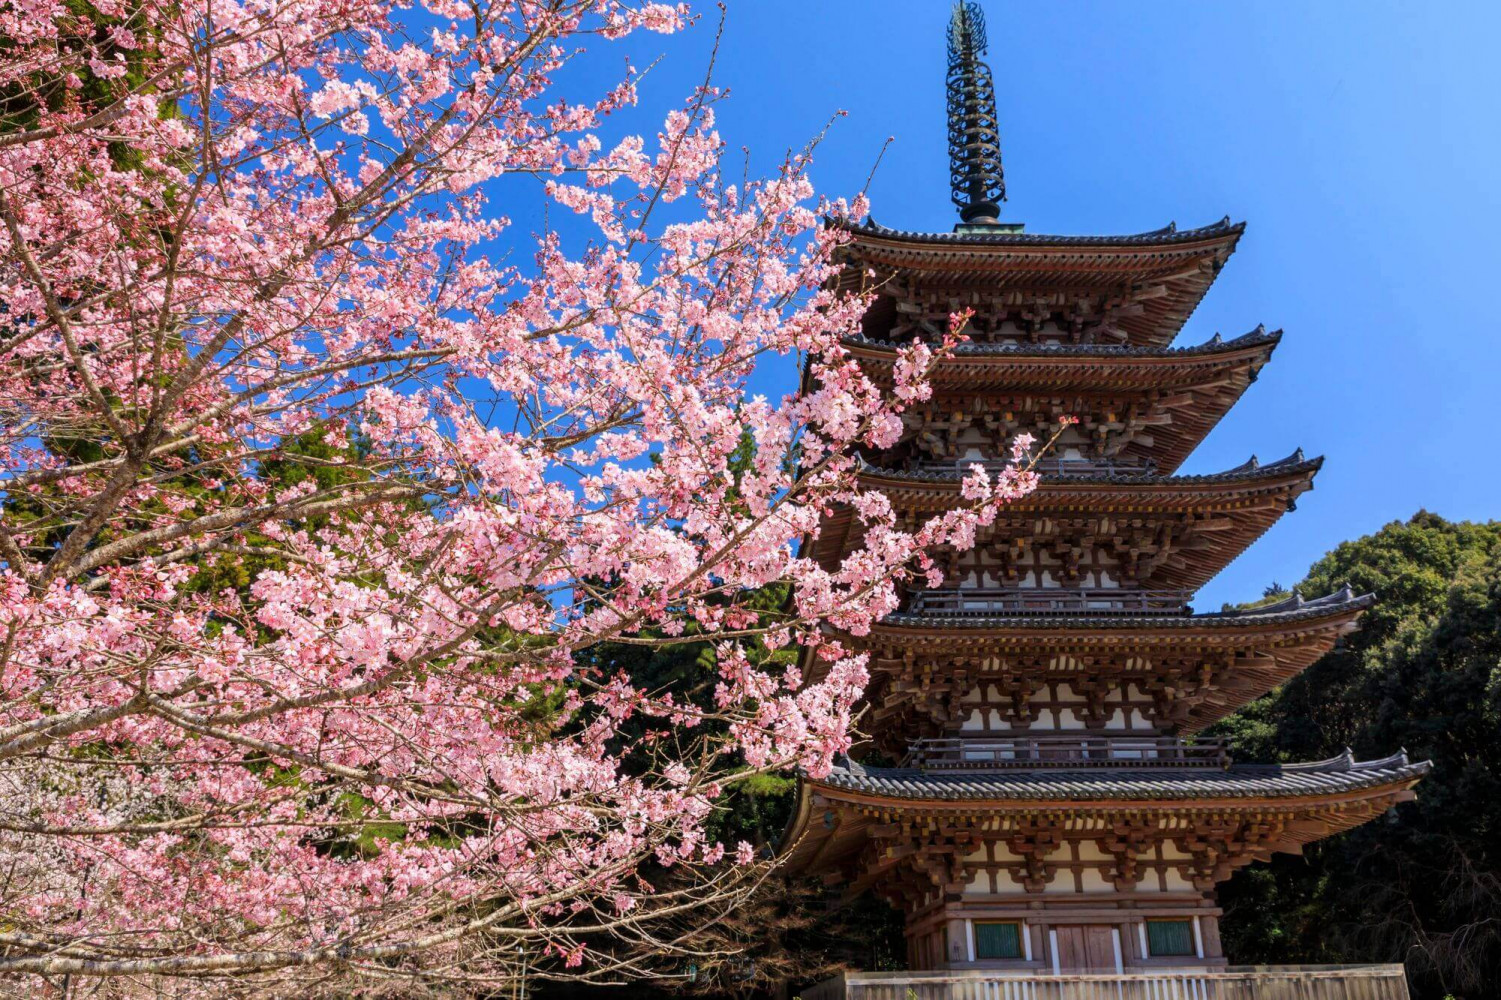 TOP các địa điểm ngắm hoa anh đào ở Nhật - Thái An Travel - 17